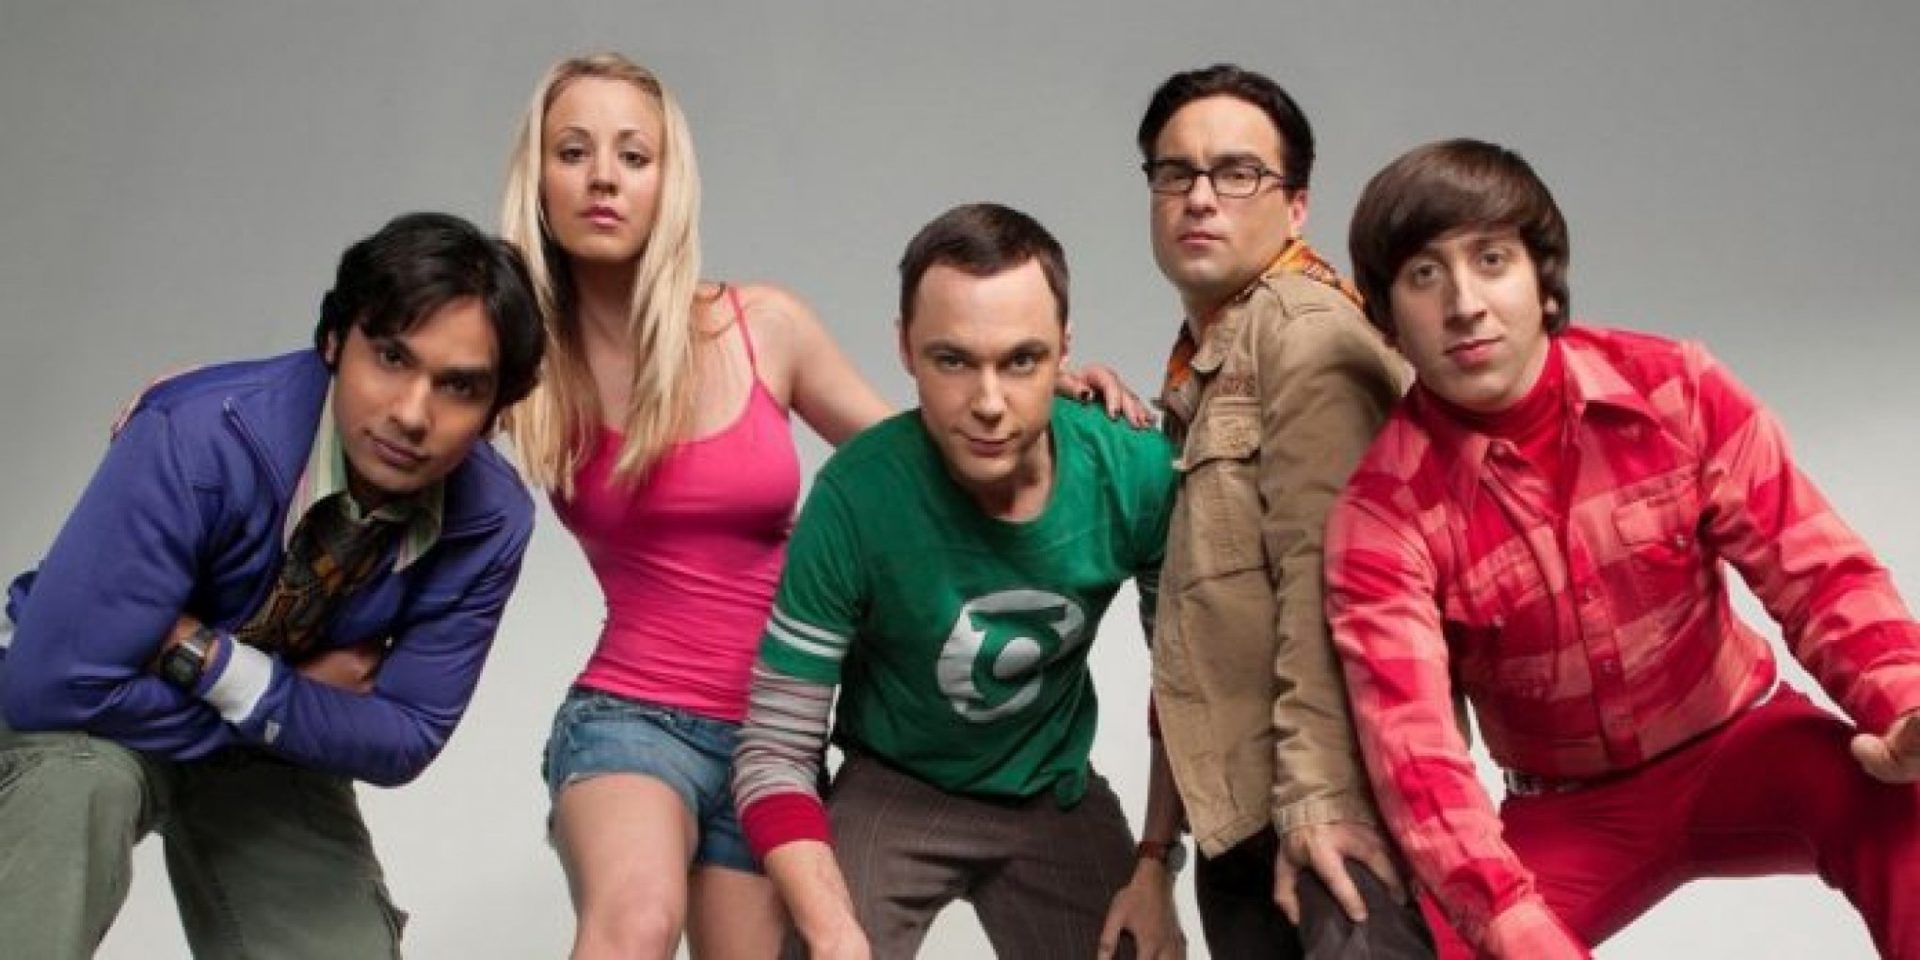 Atores de The Big Bang Theory se reúnem em foto emocionante; veja